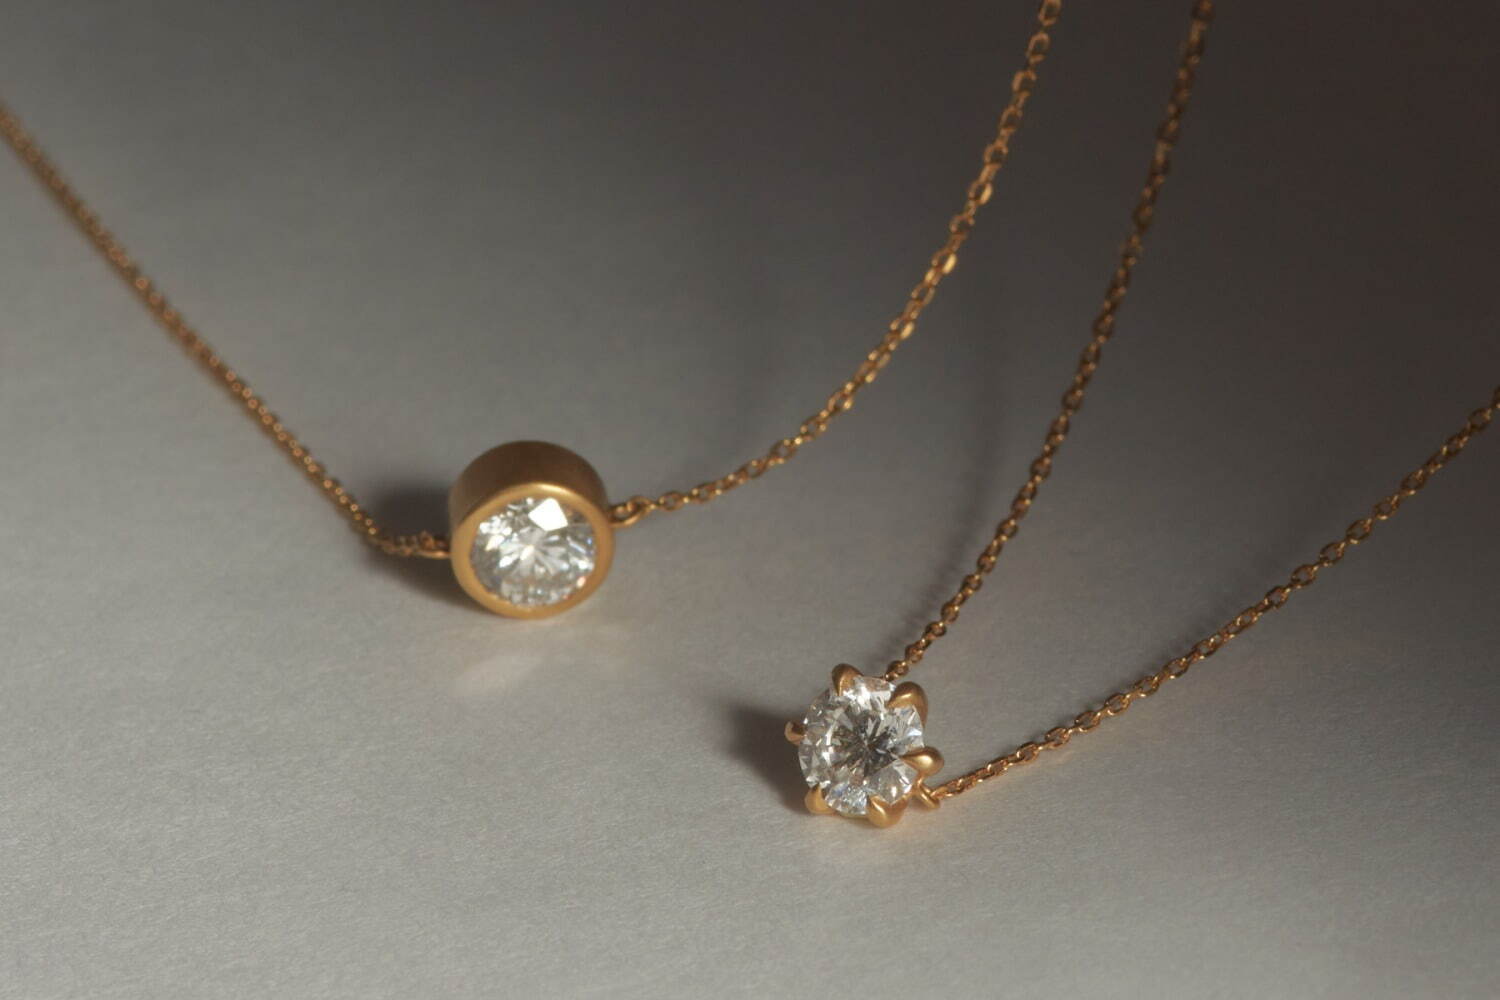 左から) ラボグロウンダイヤモンド ブレスレット 覆輪留め、爪留め 各121,000円